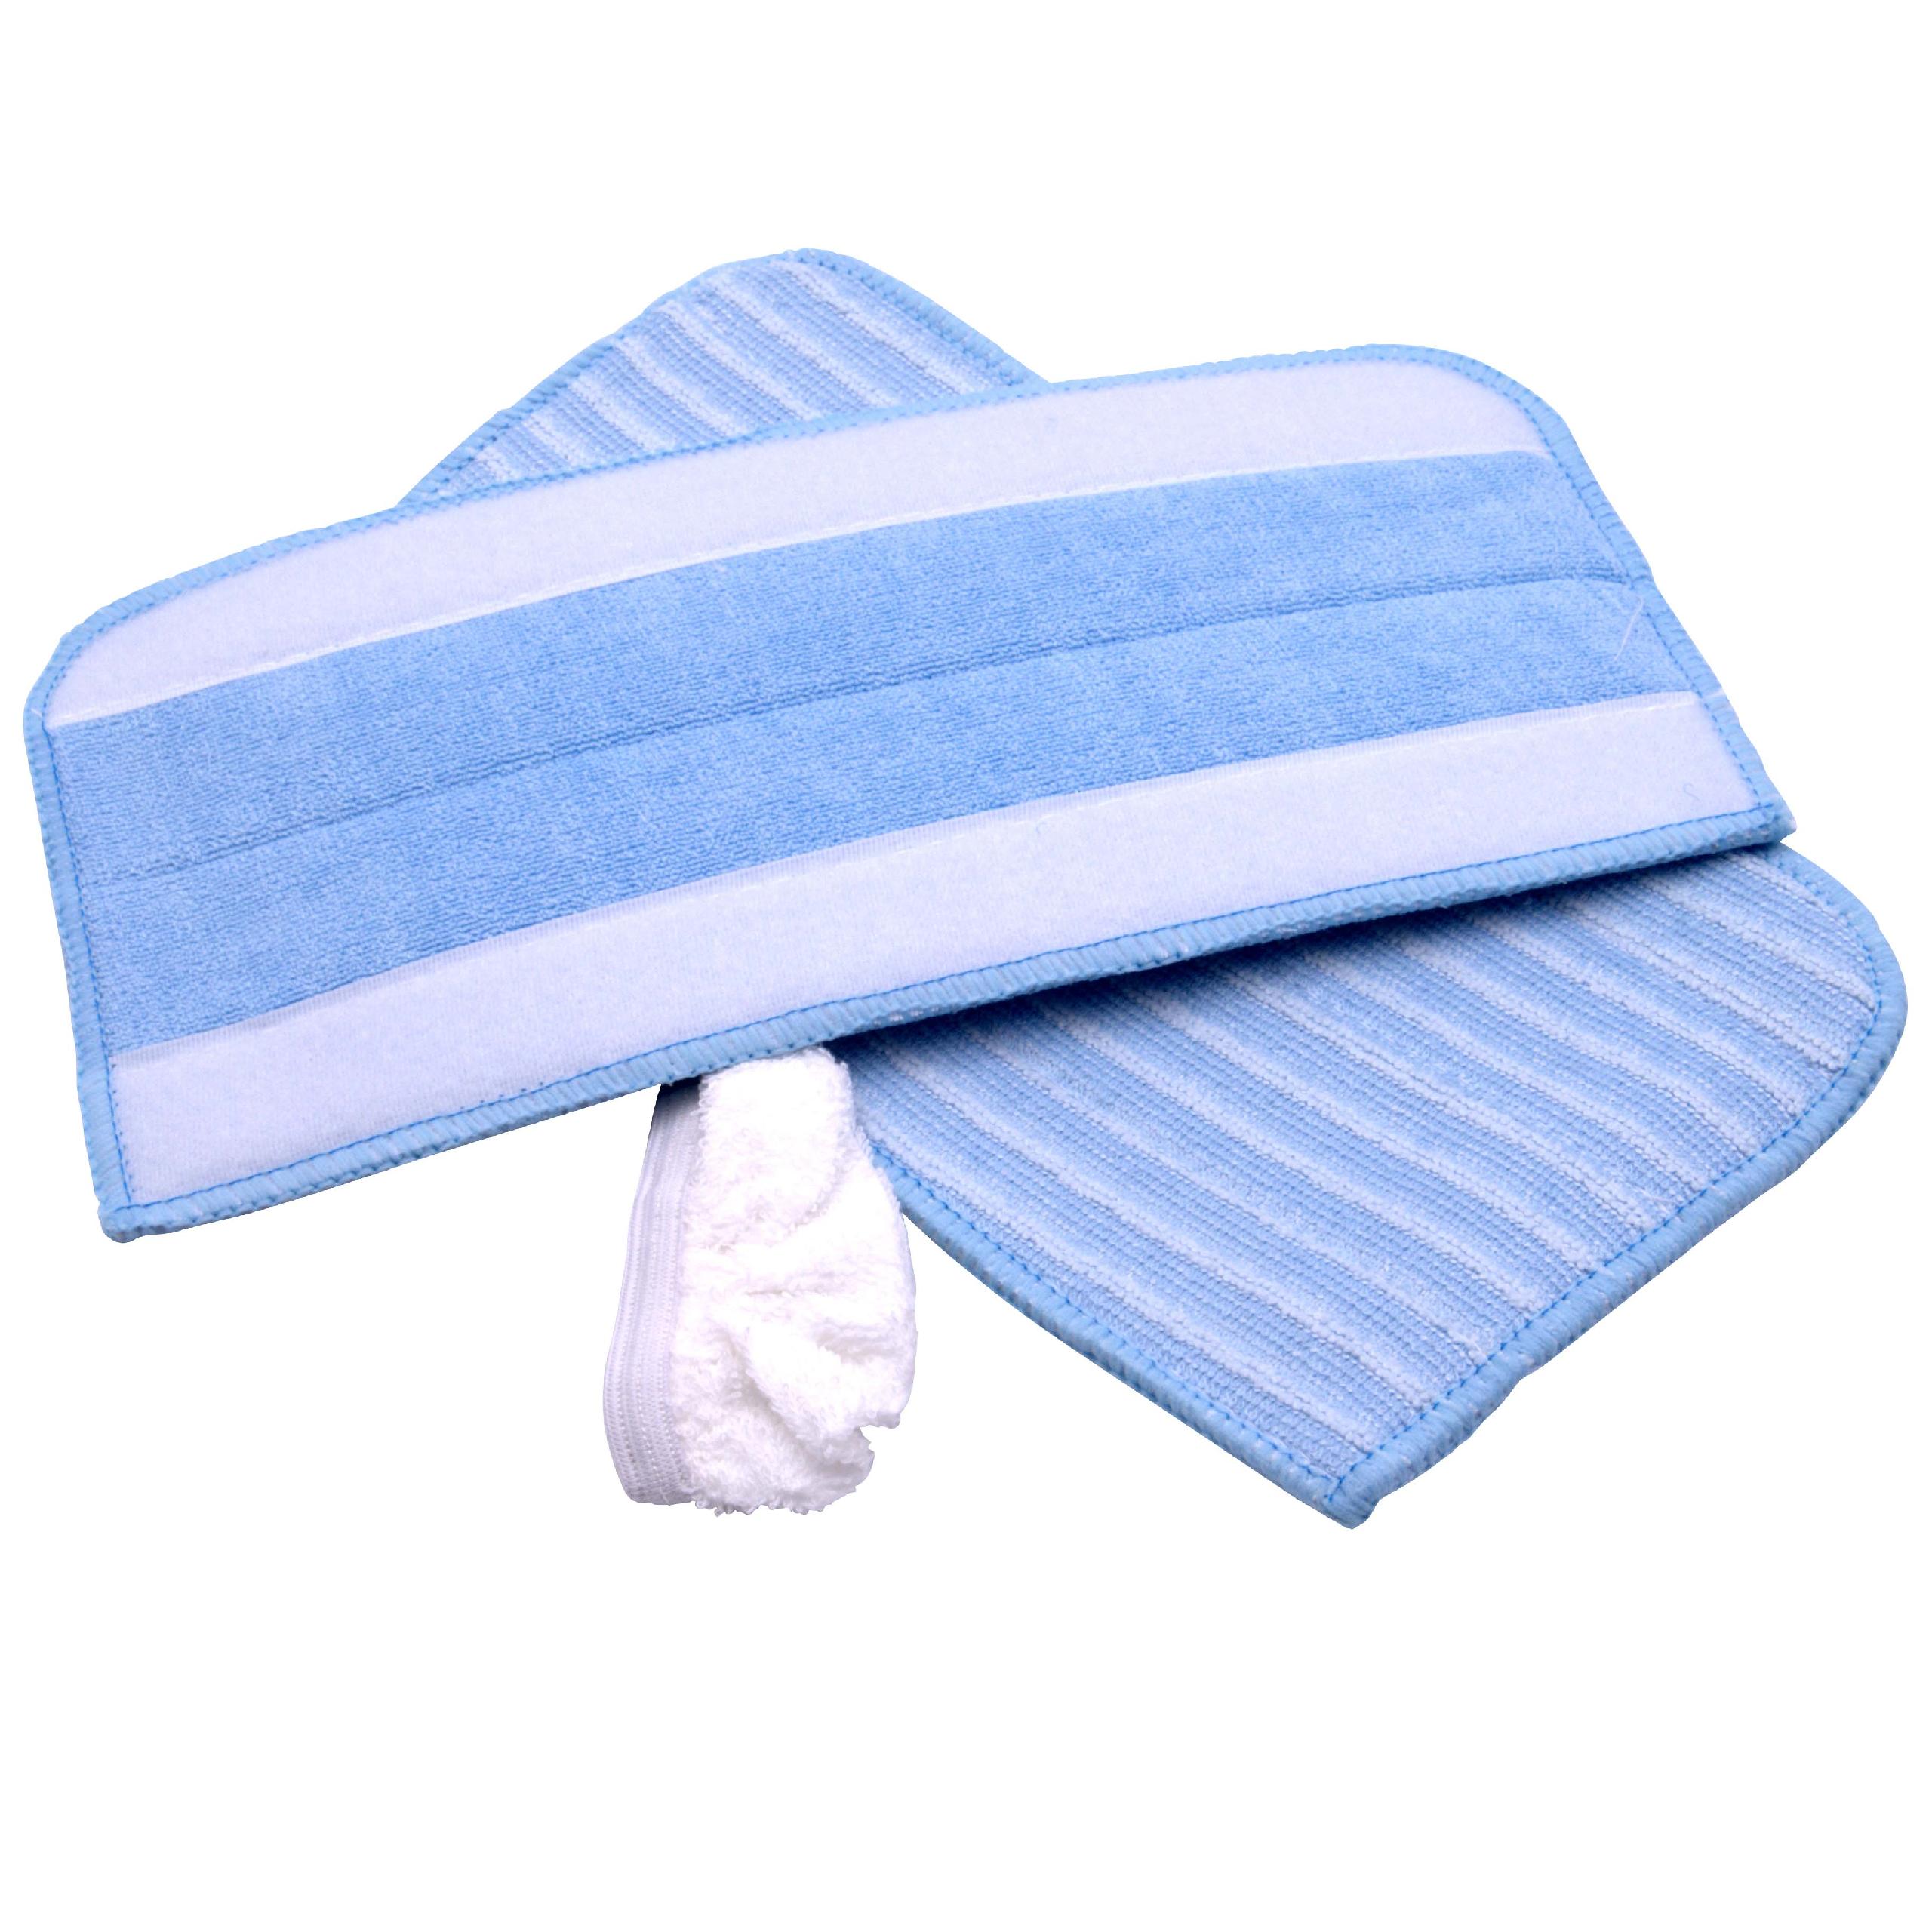  Cleaning Cloth Set (3 Part) replaces Dirt Devil 0319001 for - microfibre / cotton